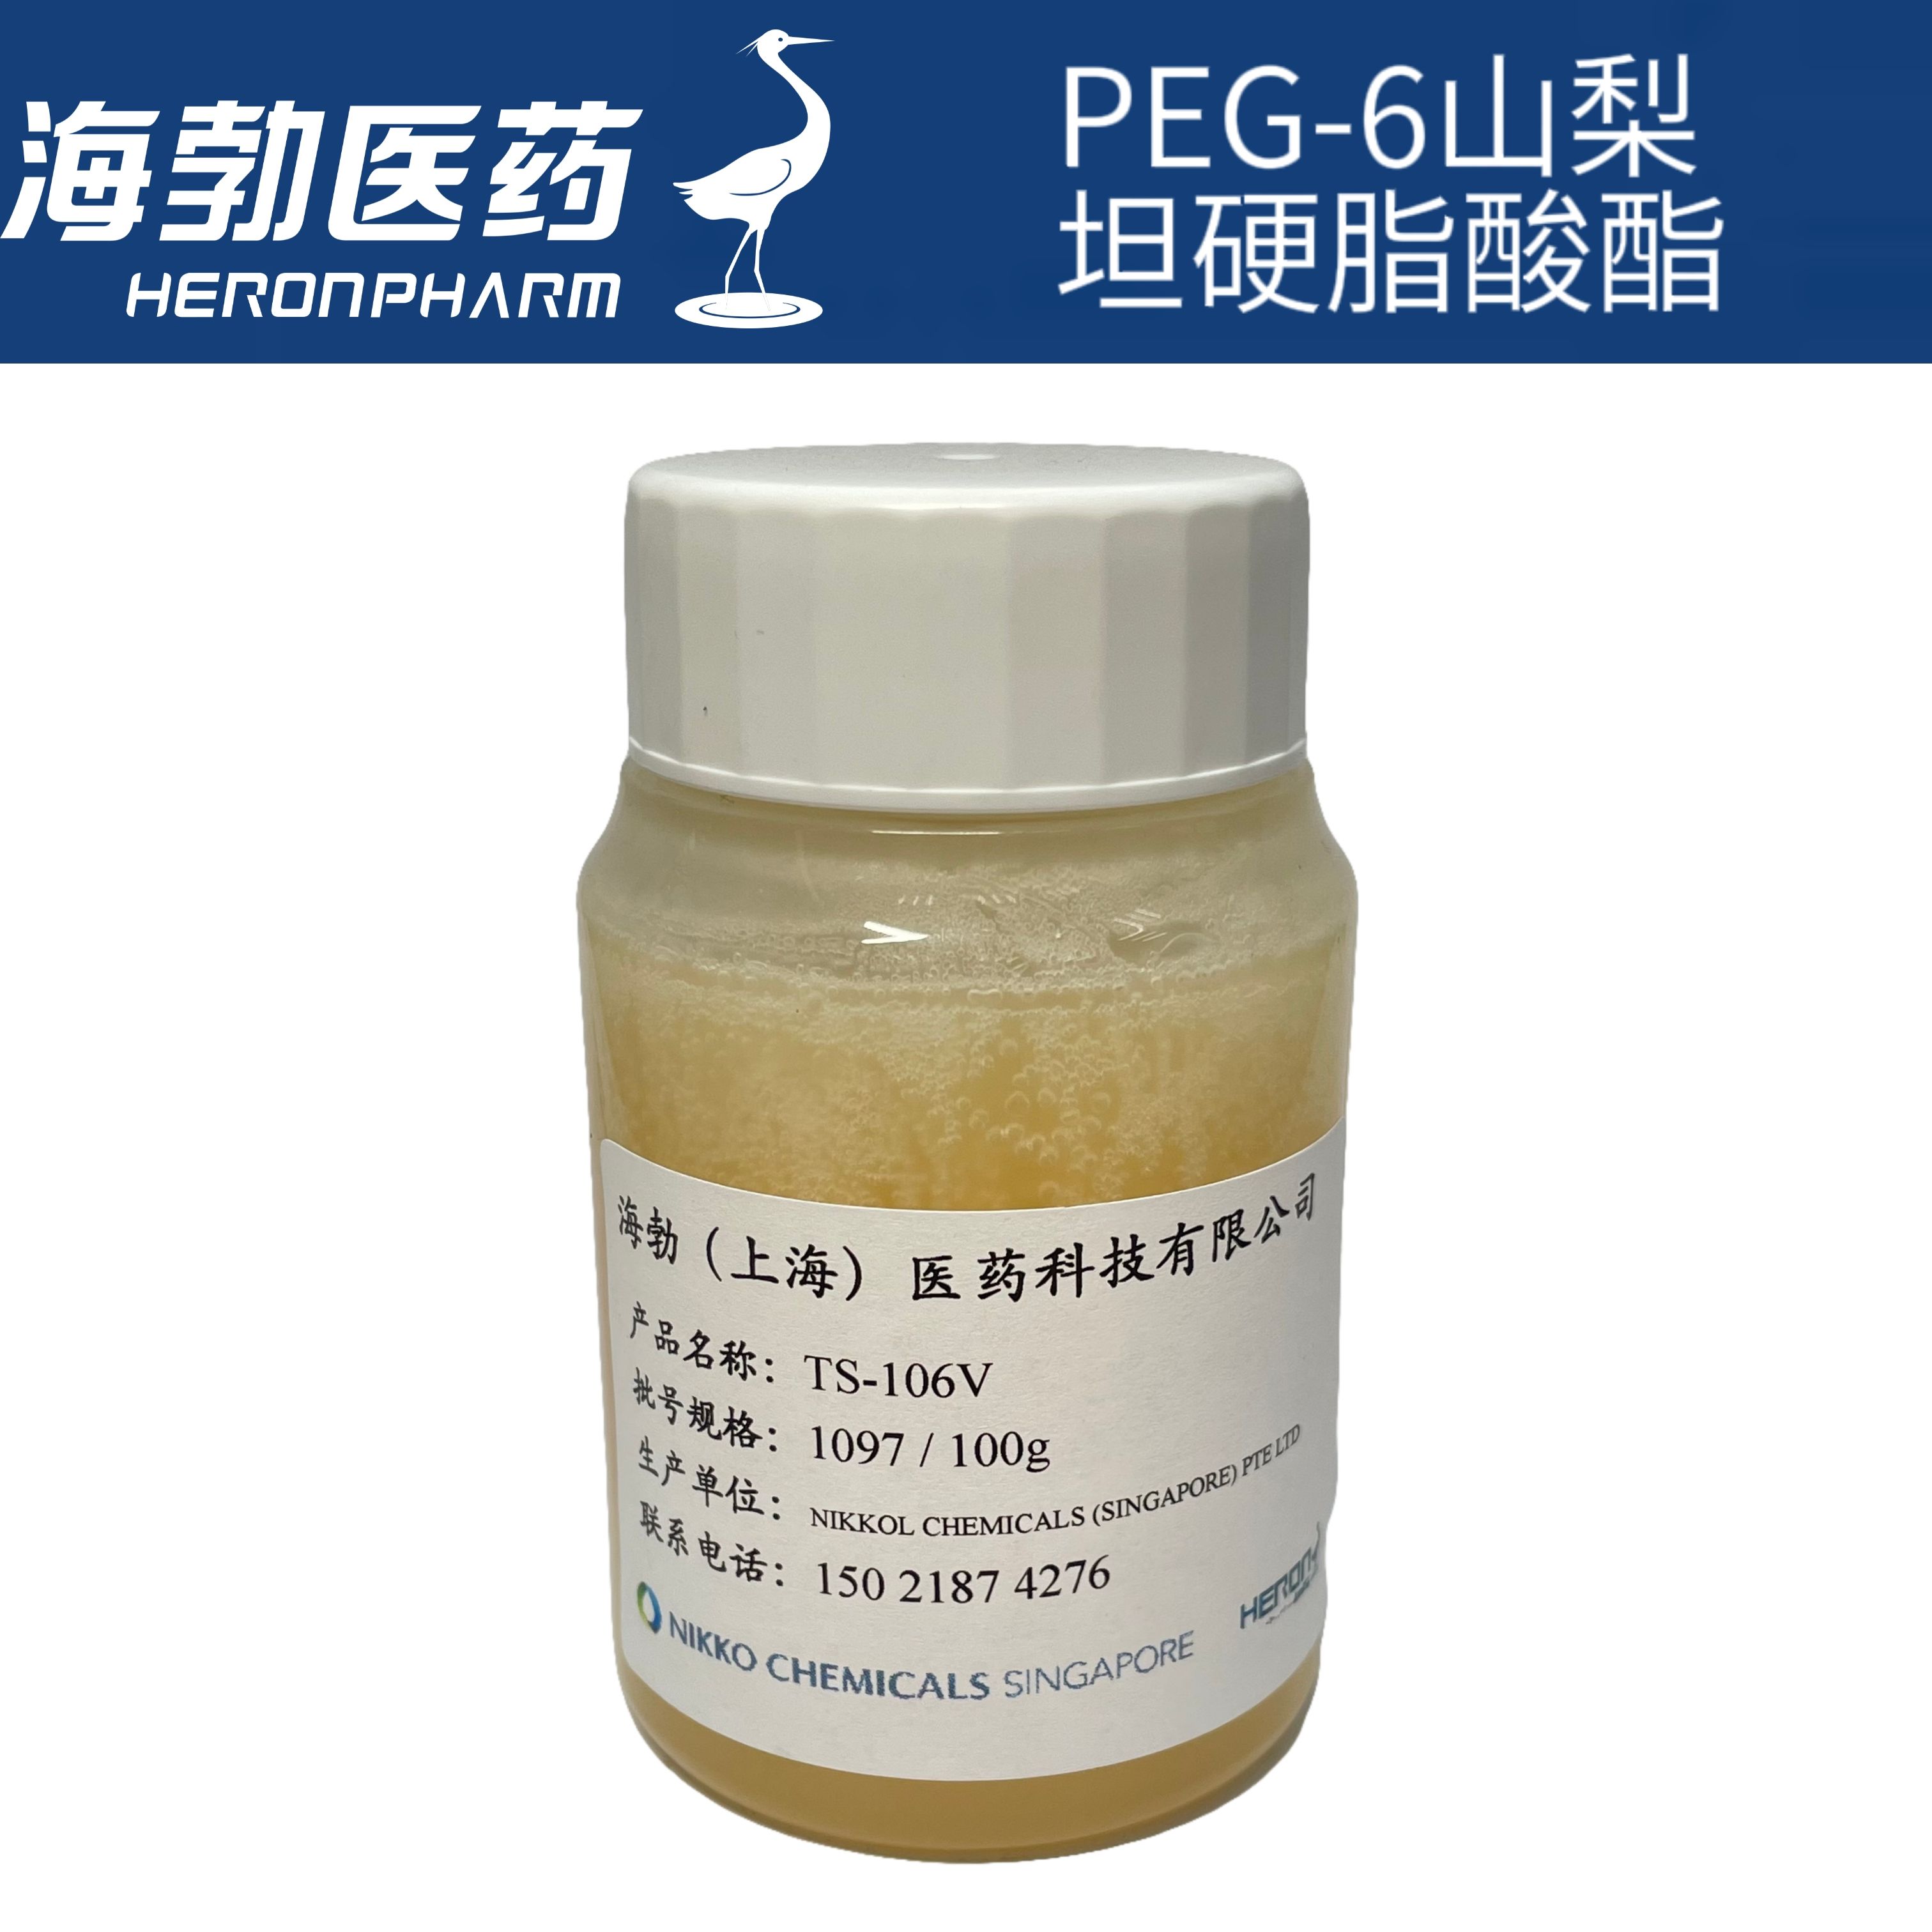 PEG-6山梨坦硬脂酸酯